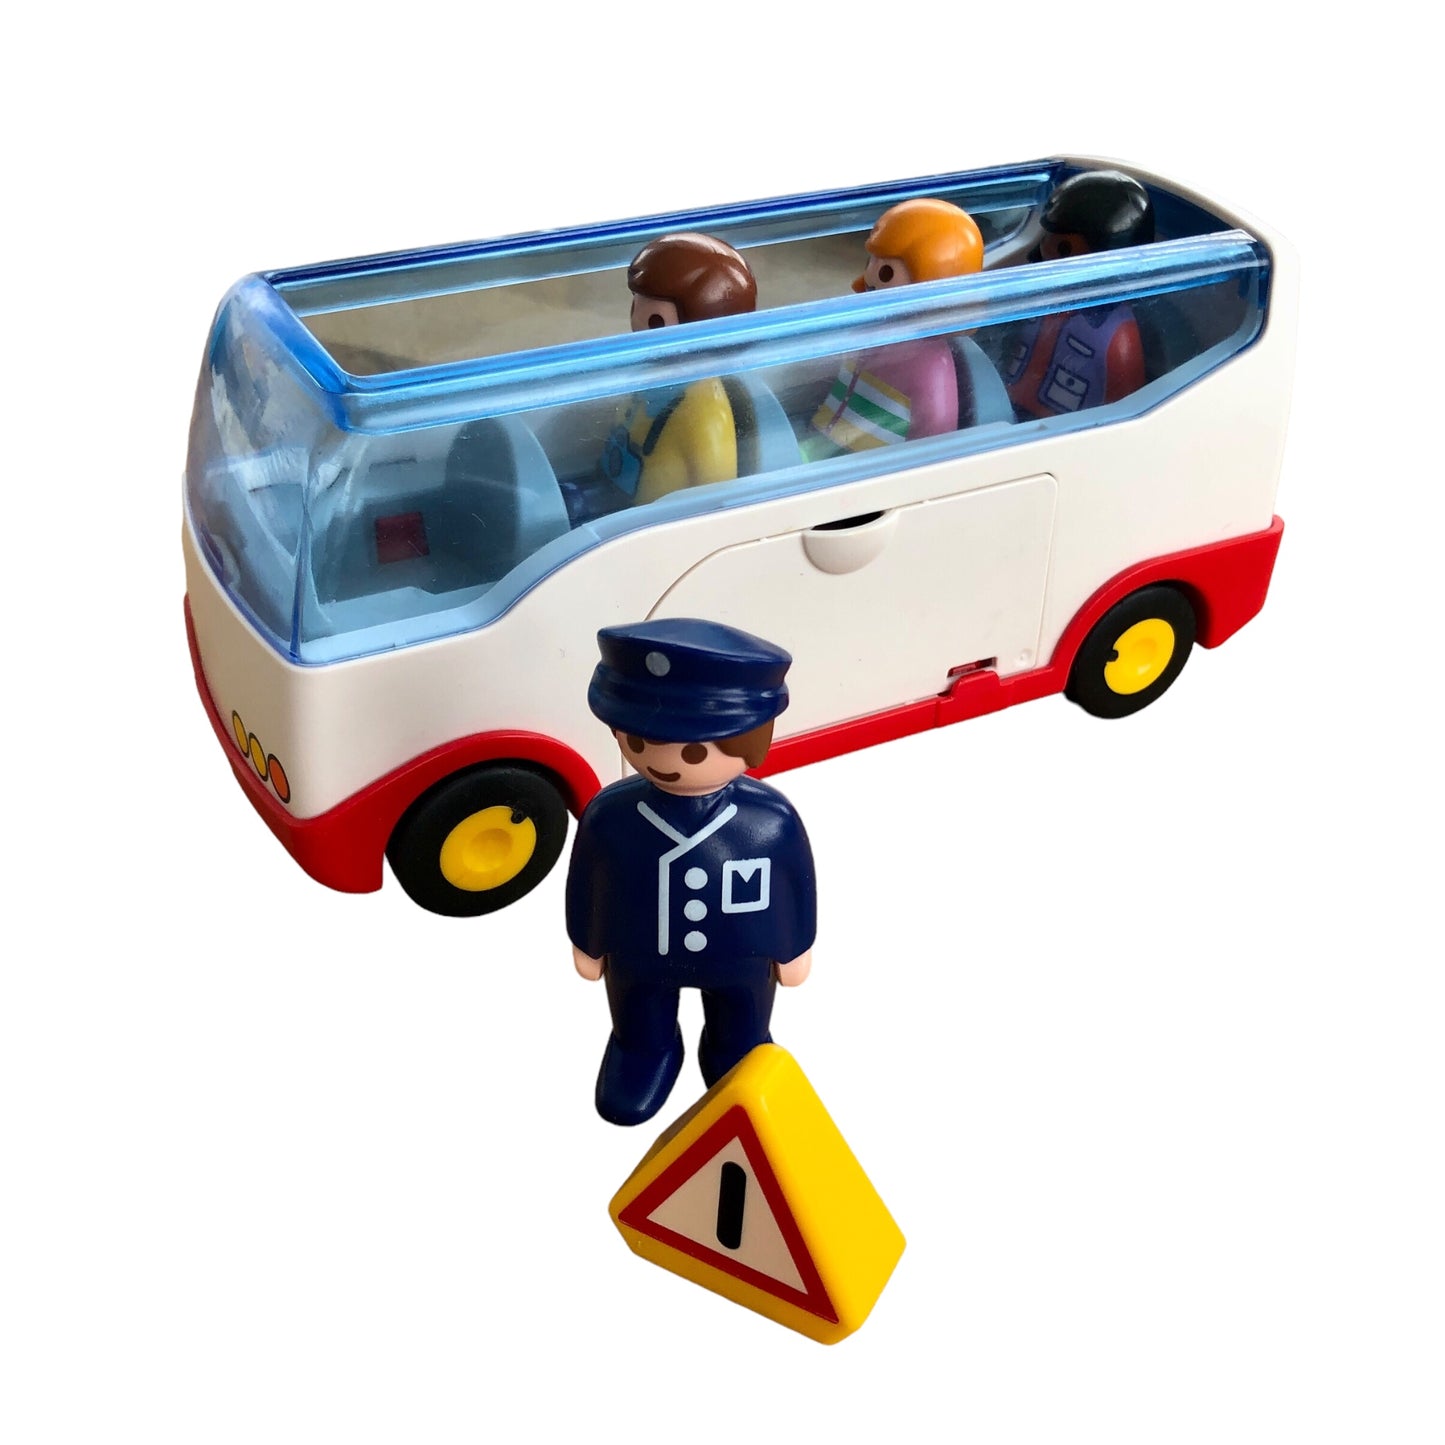 Playmobil 123 - Bus